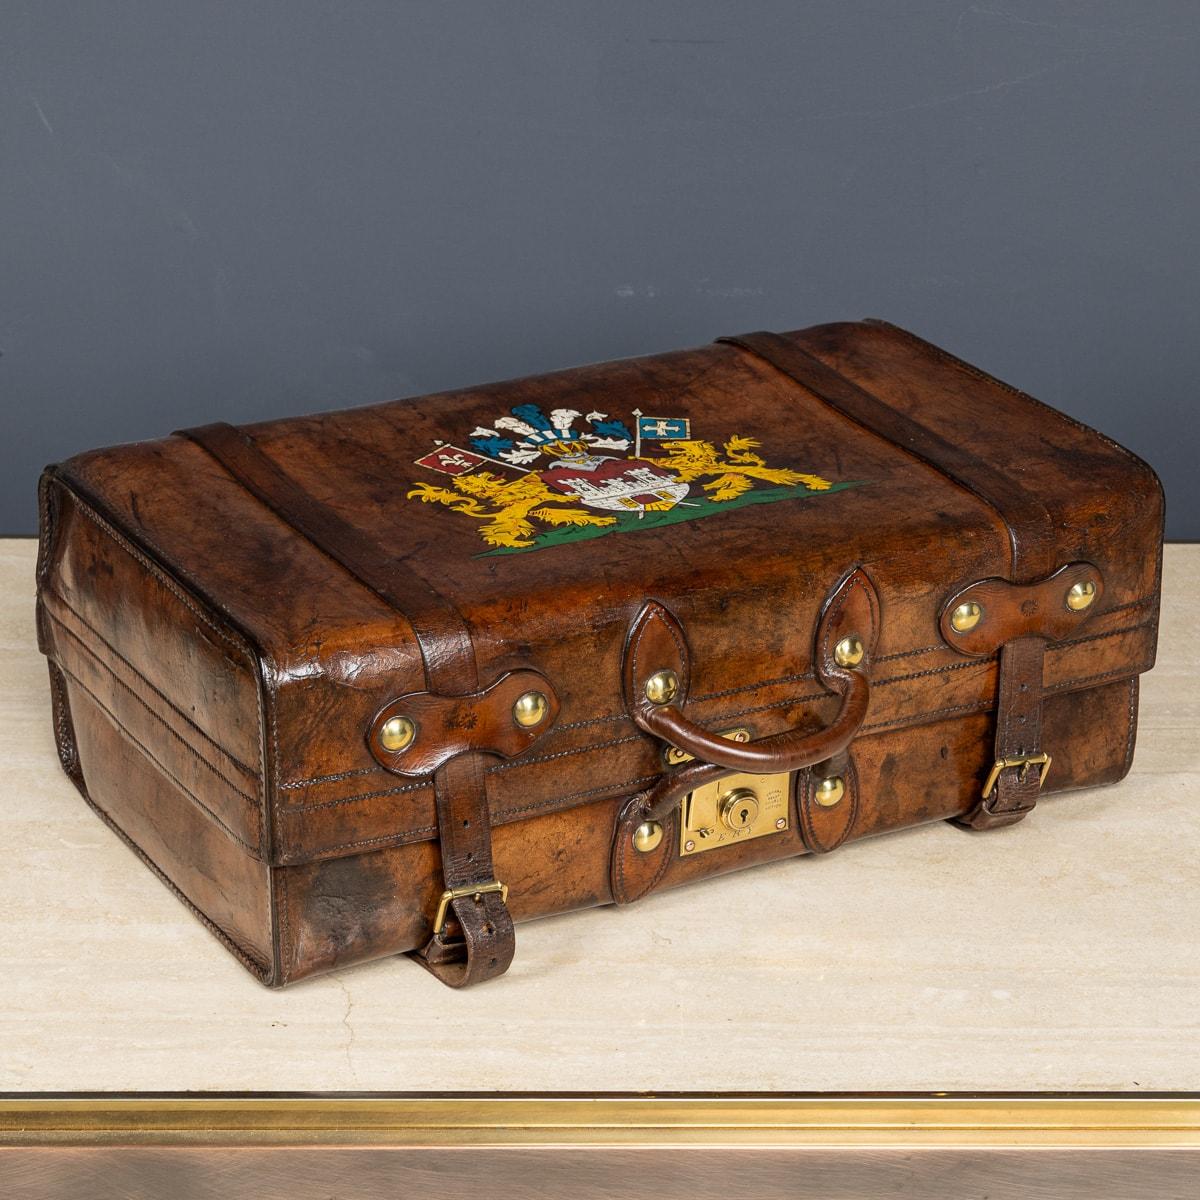 Ancienne valise victorienne en cuir du milieu du 19e siècle avec un écusson familial peint. La valise est très bien conservée et comporte la doublure en coton d'origine, un porte-documents et des housses de protection avec des sangles en cuir. La